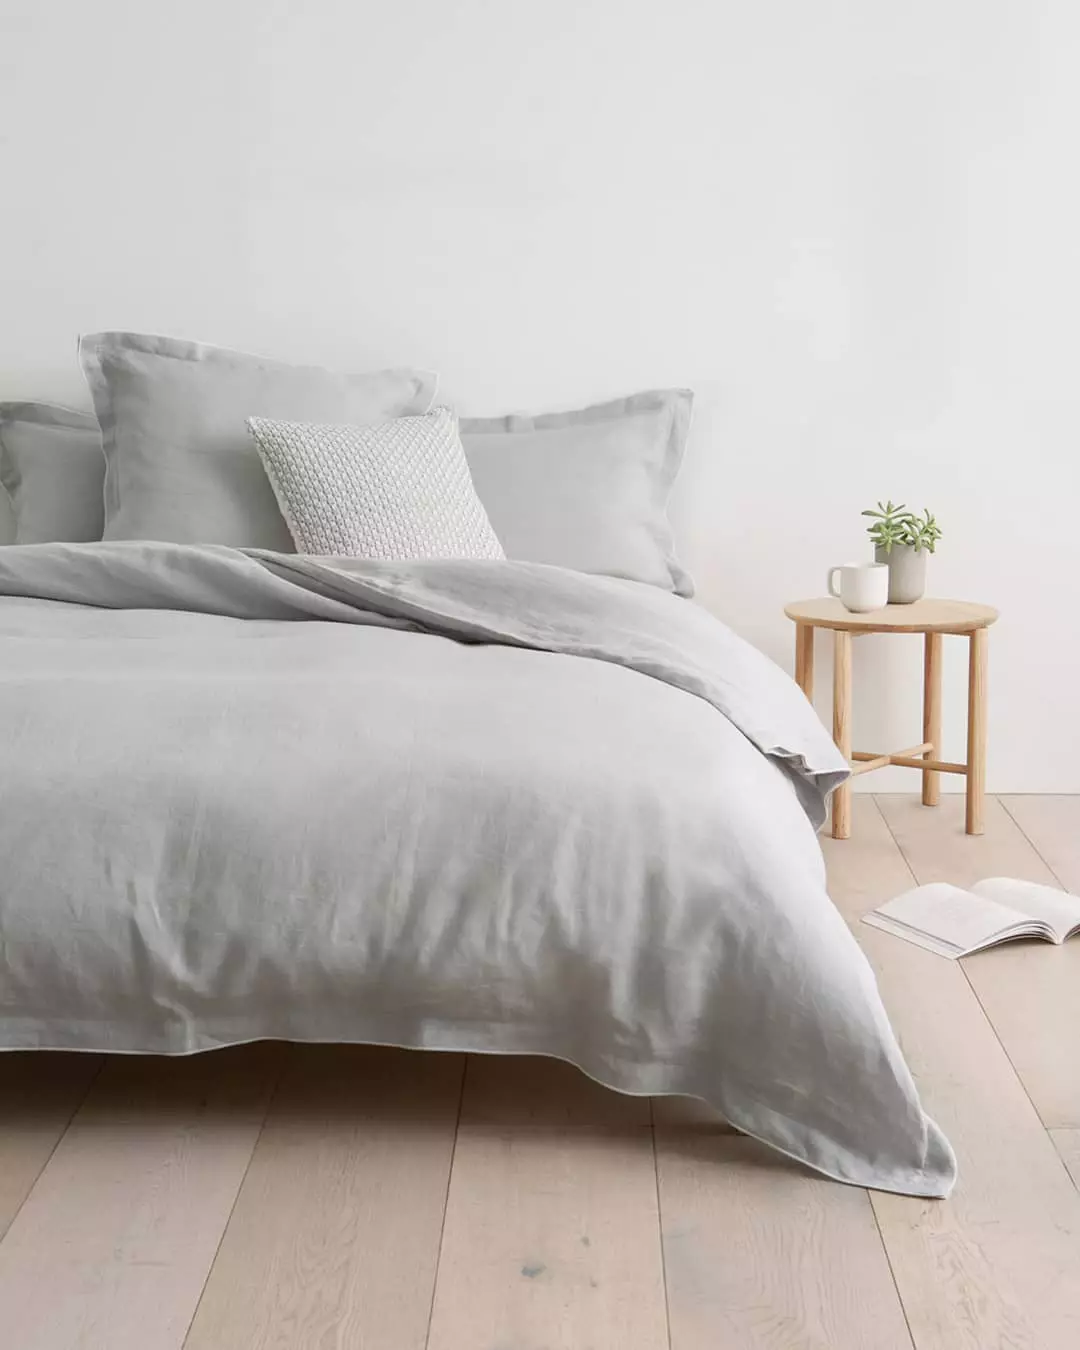 Moderan posteljina u skandinavskom stilu kreveta od prirodnih materijala u pastel tonovima Eco Decor Decor Decor